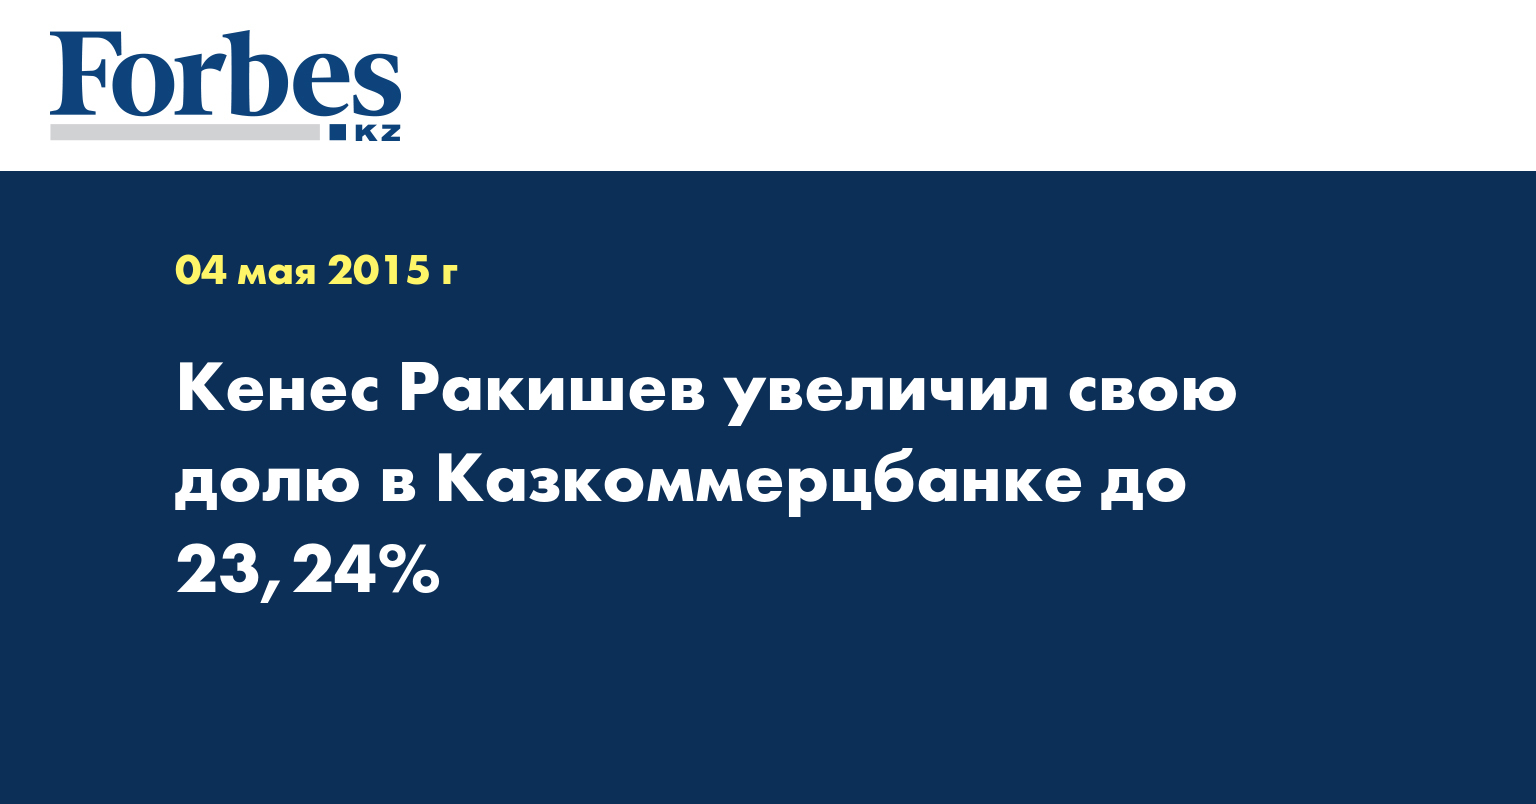 Кенес Ракишев увеличил свою долю в Казкоммерцбанке до 23,24%